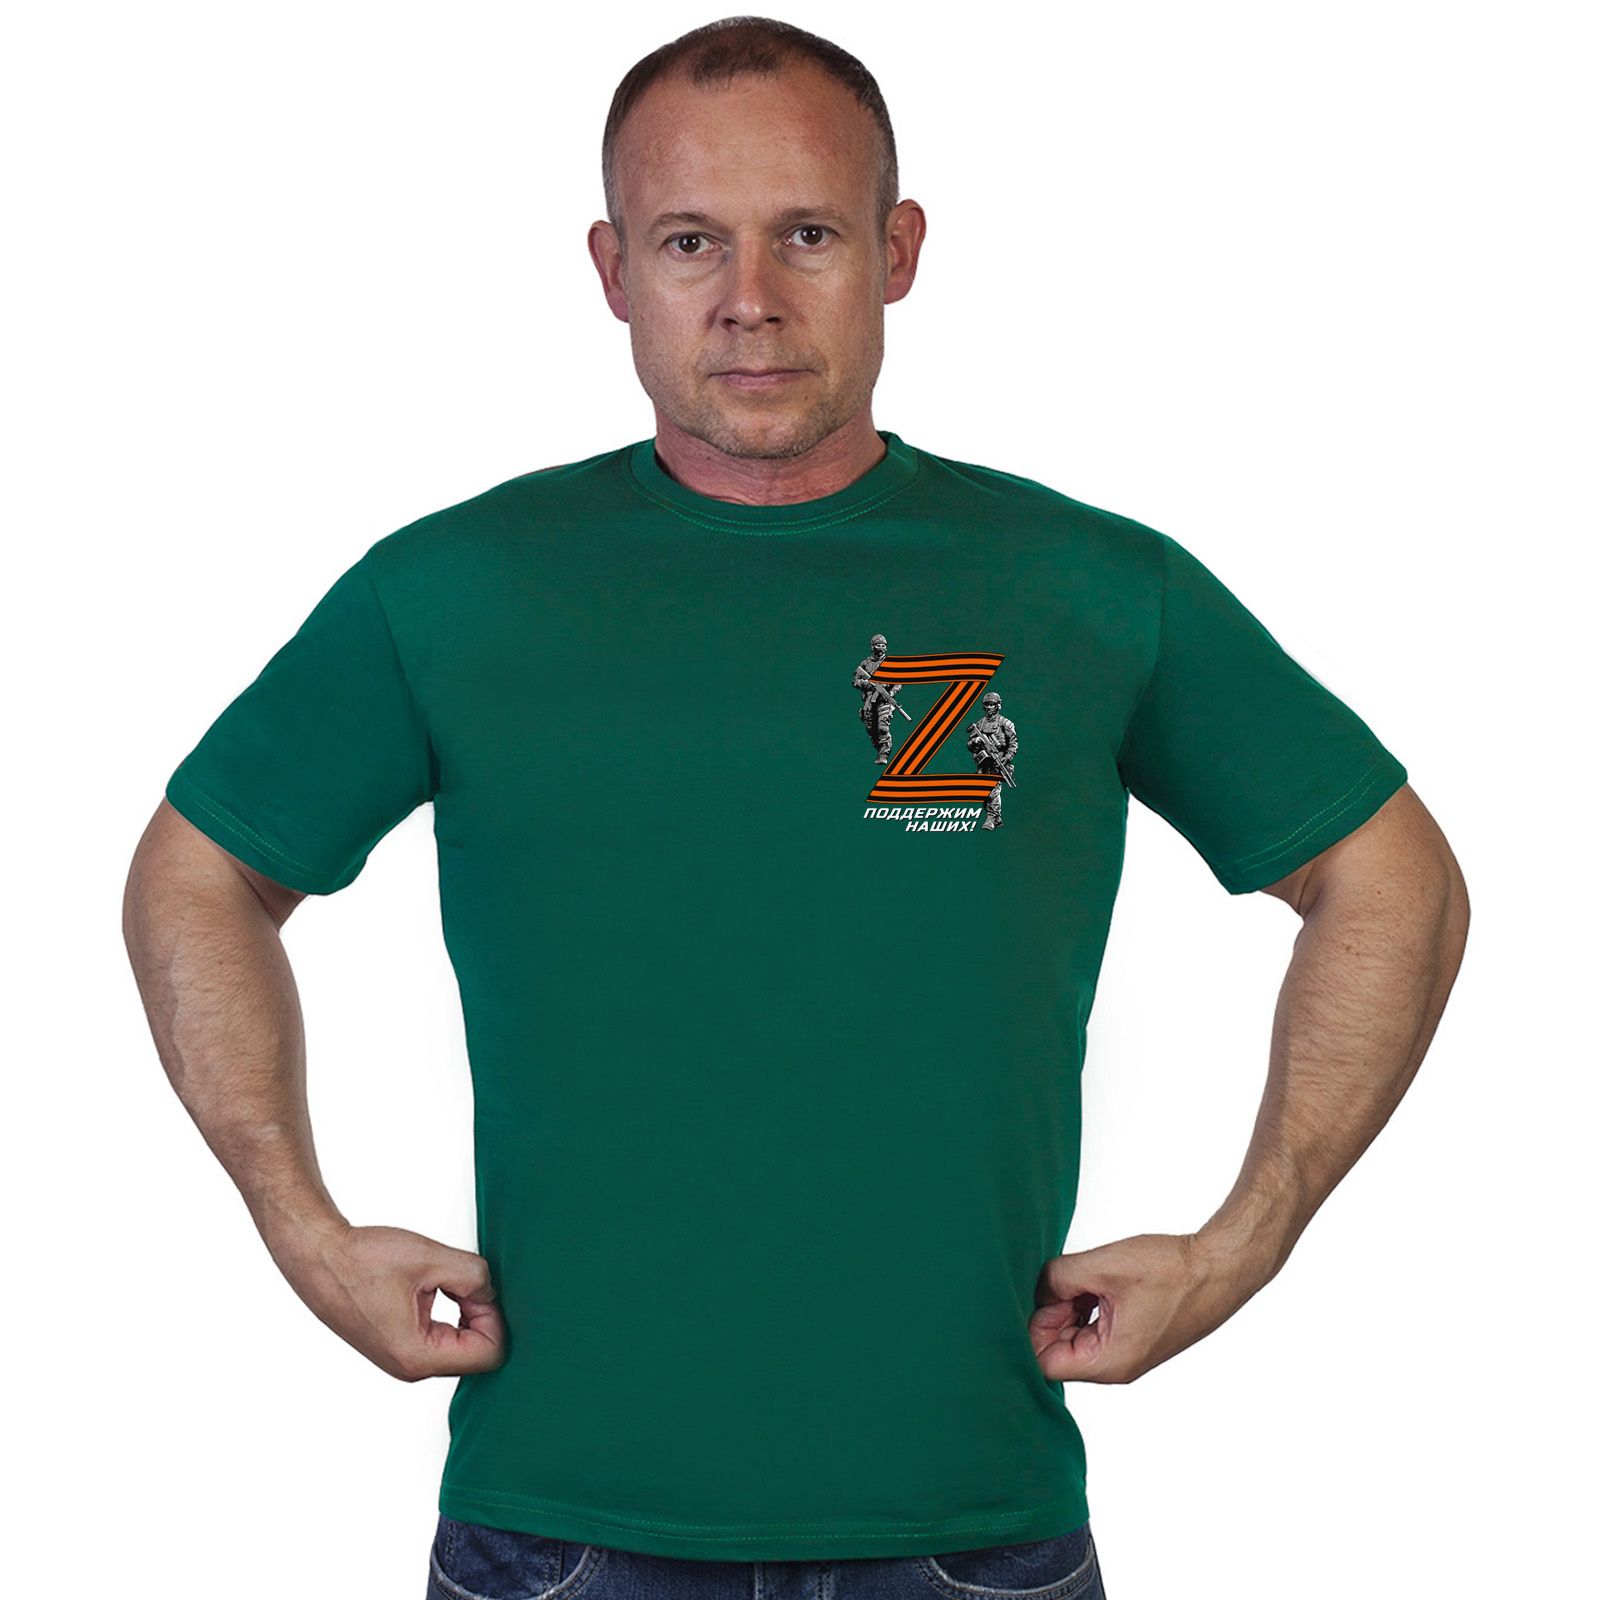 Купить в интернете футболку с георгиевской Z